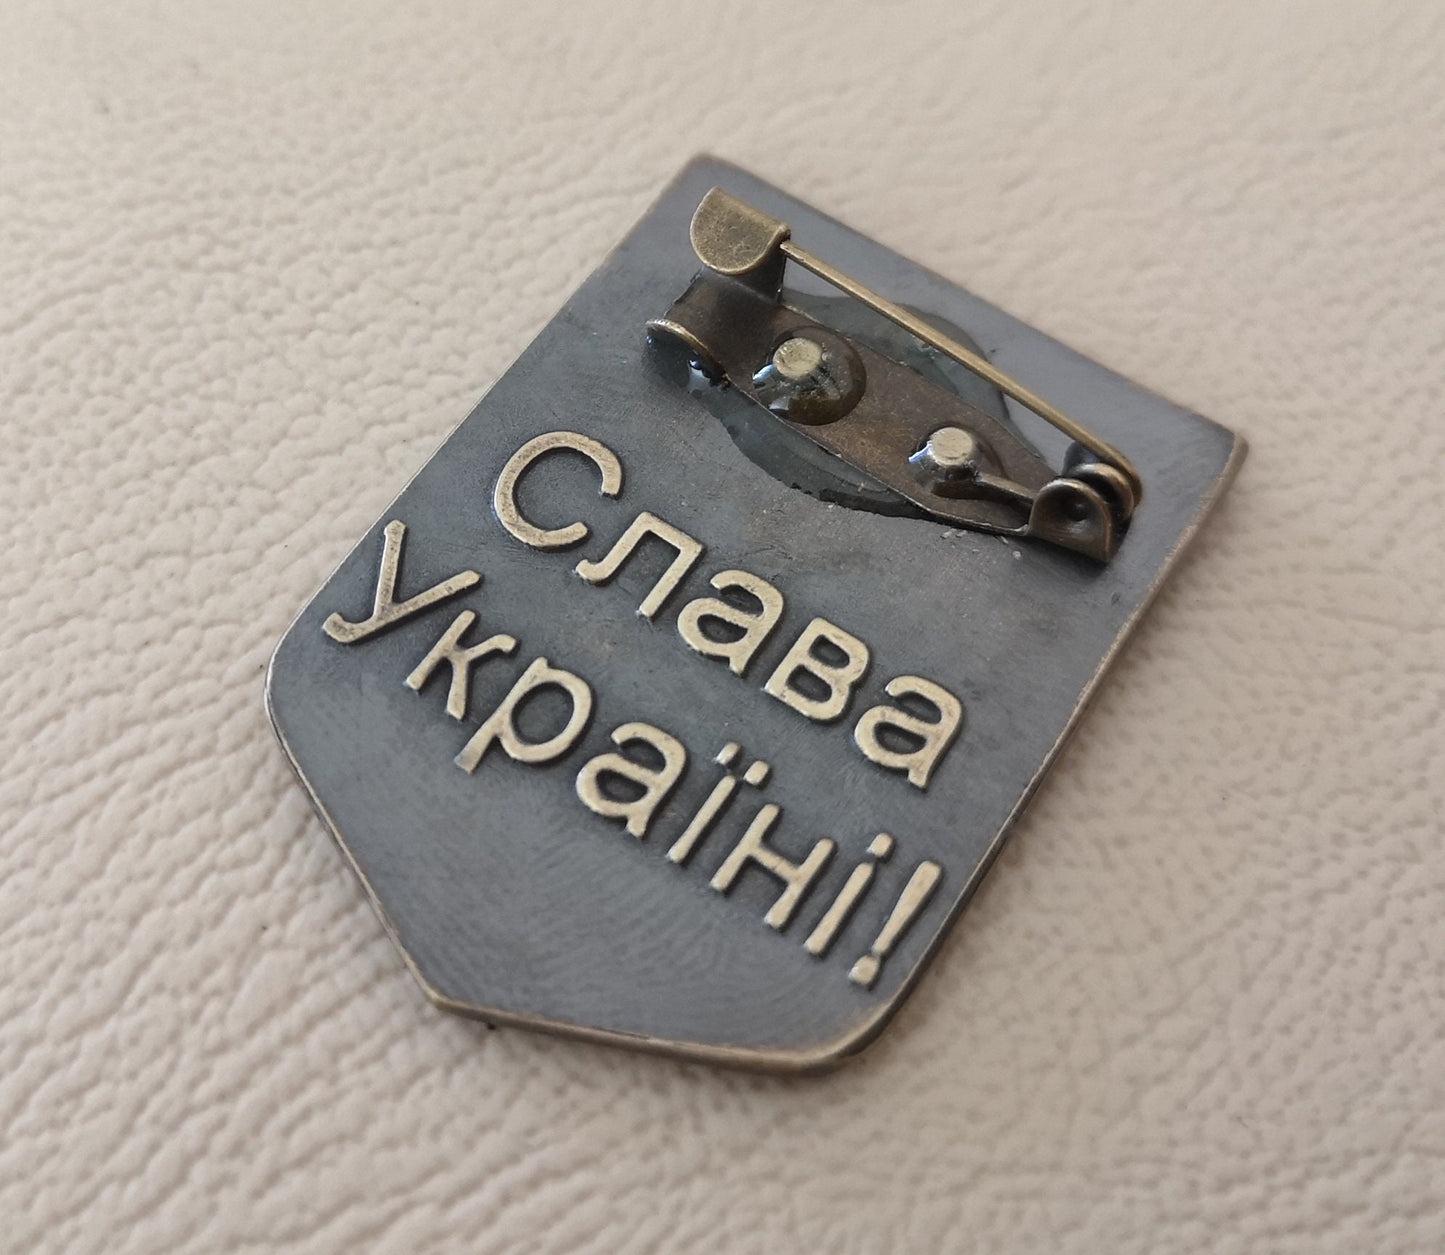 Ukraine Trident Pin Brooch  - Support Ukraine - Non Profit sale - Baldur Jewelry